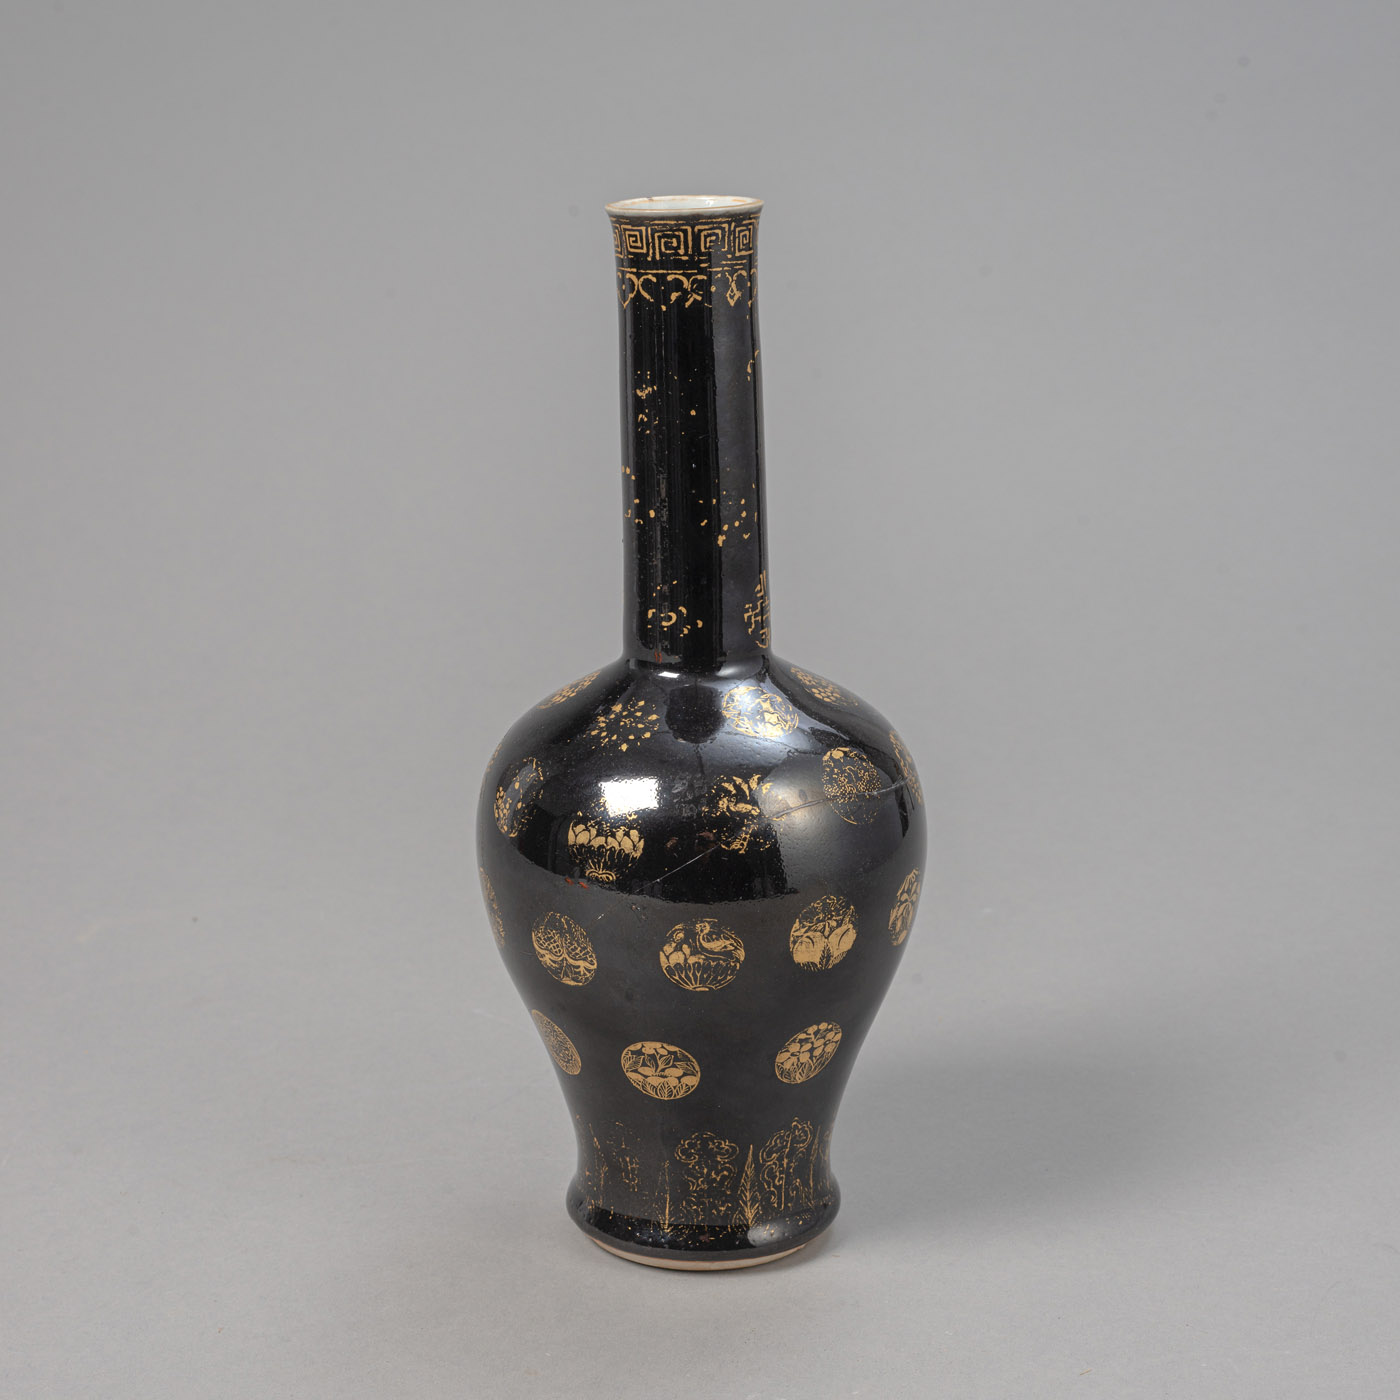 <b>Schwarz glasierte Vase 'Yaoling zun' mit Medaillon-Dekor in Gold</b>